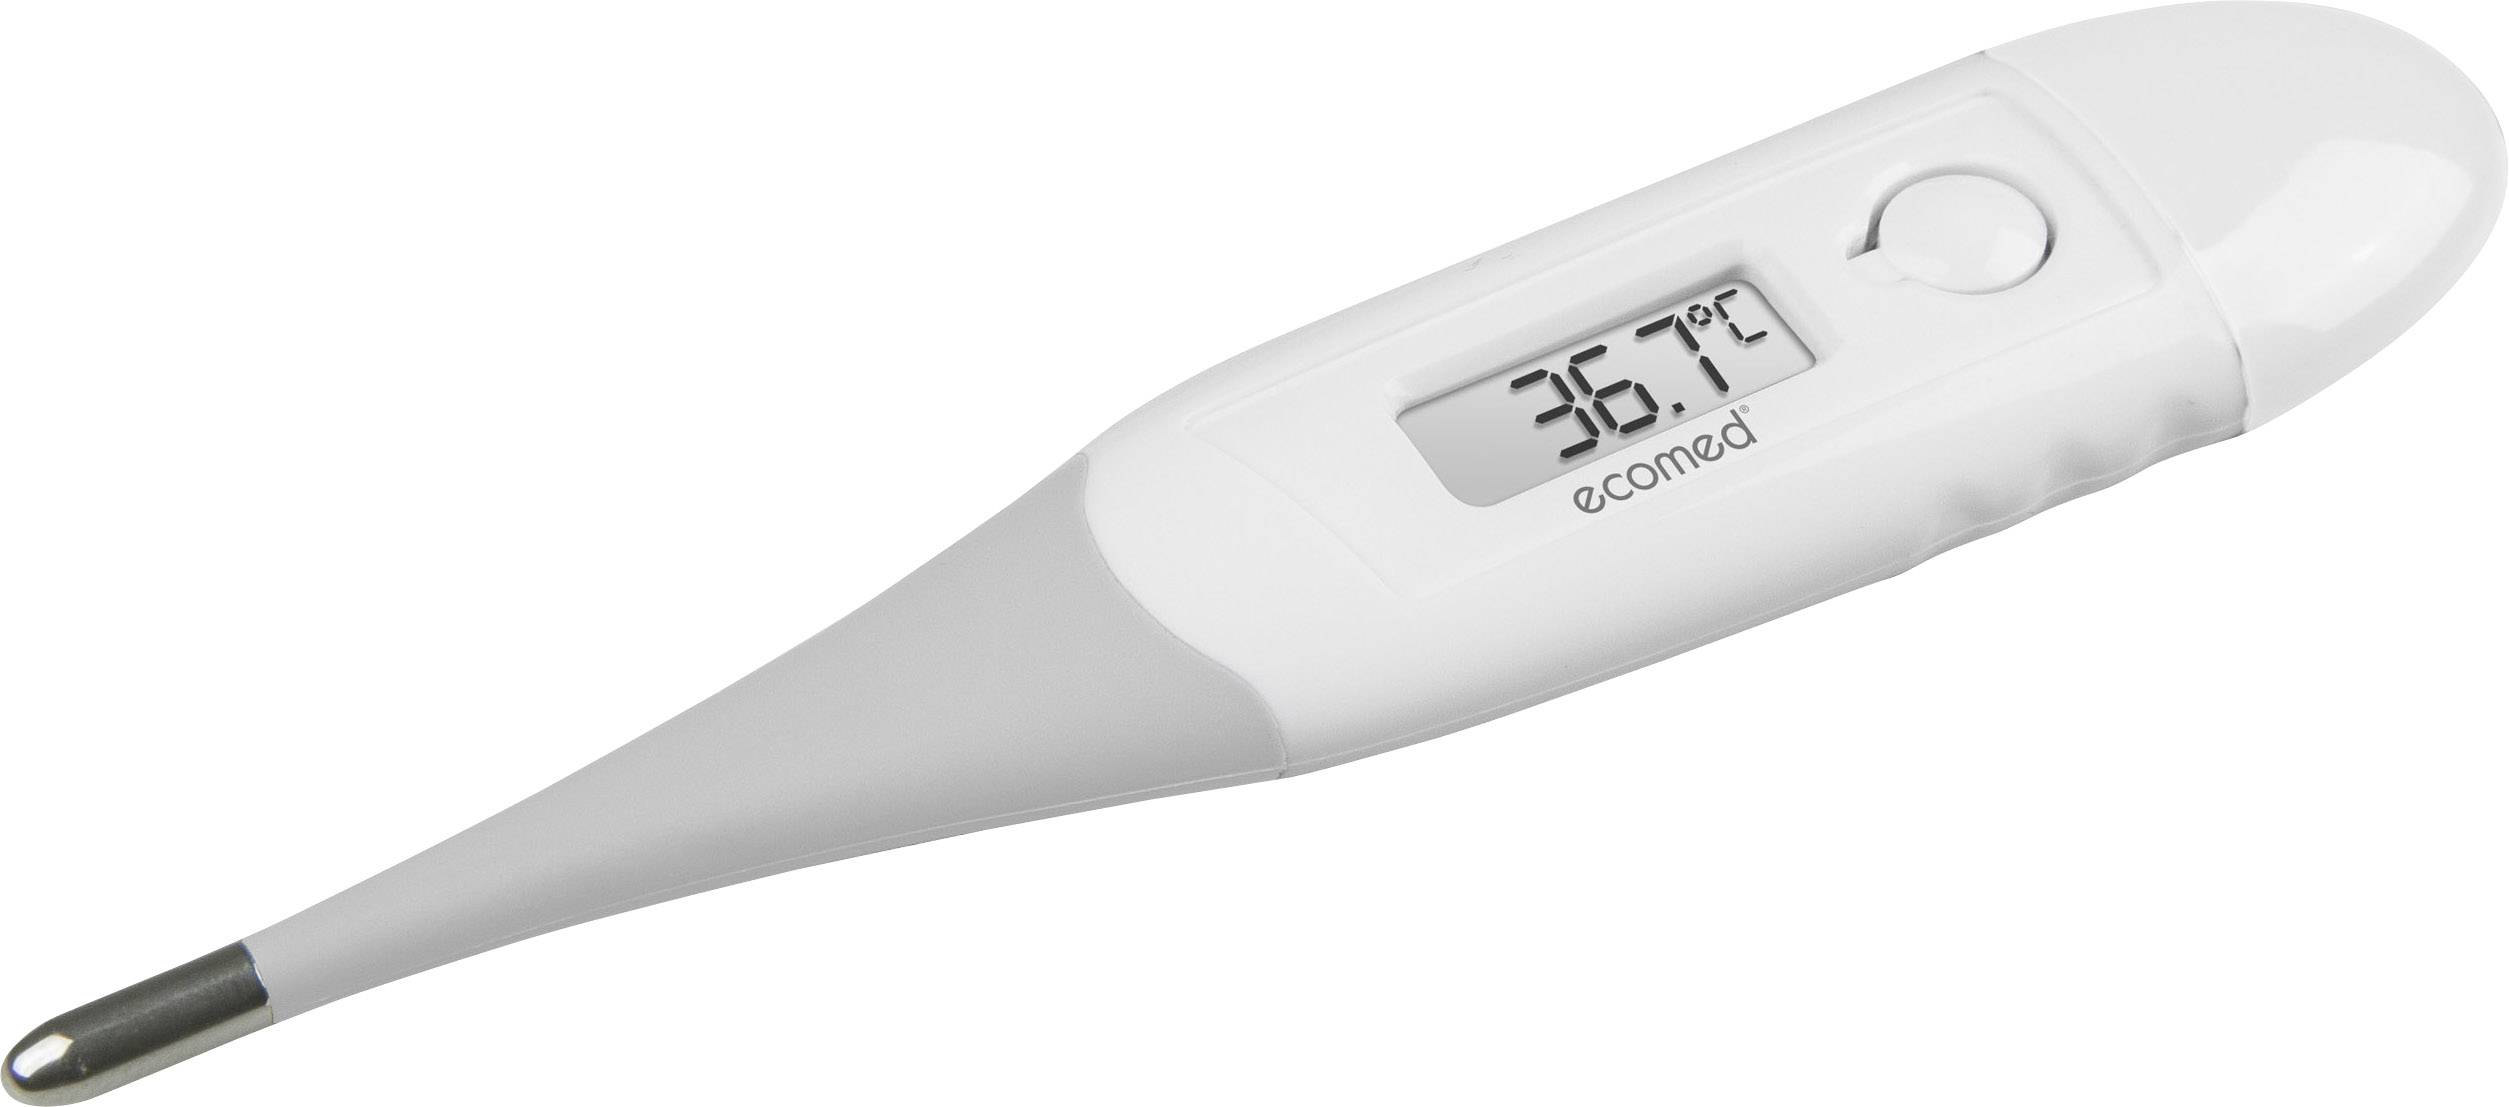 Thermometre medical electronique fievre digital sante bouche aisselle